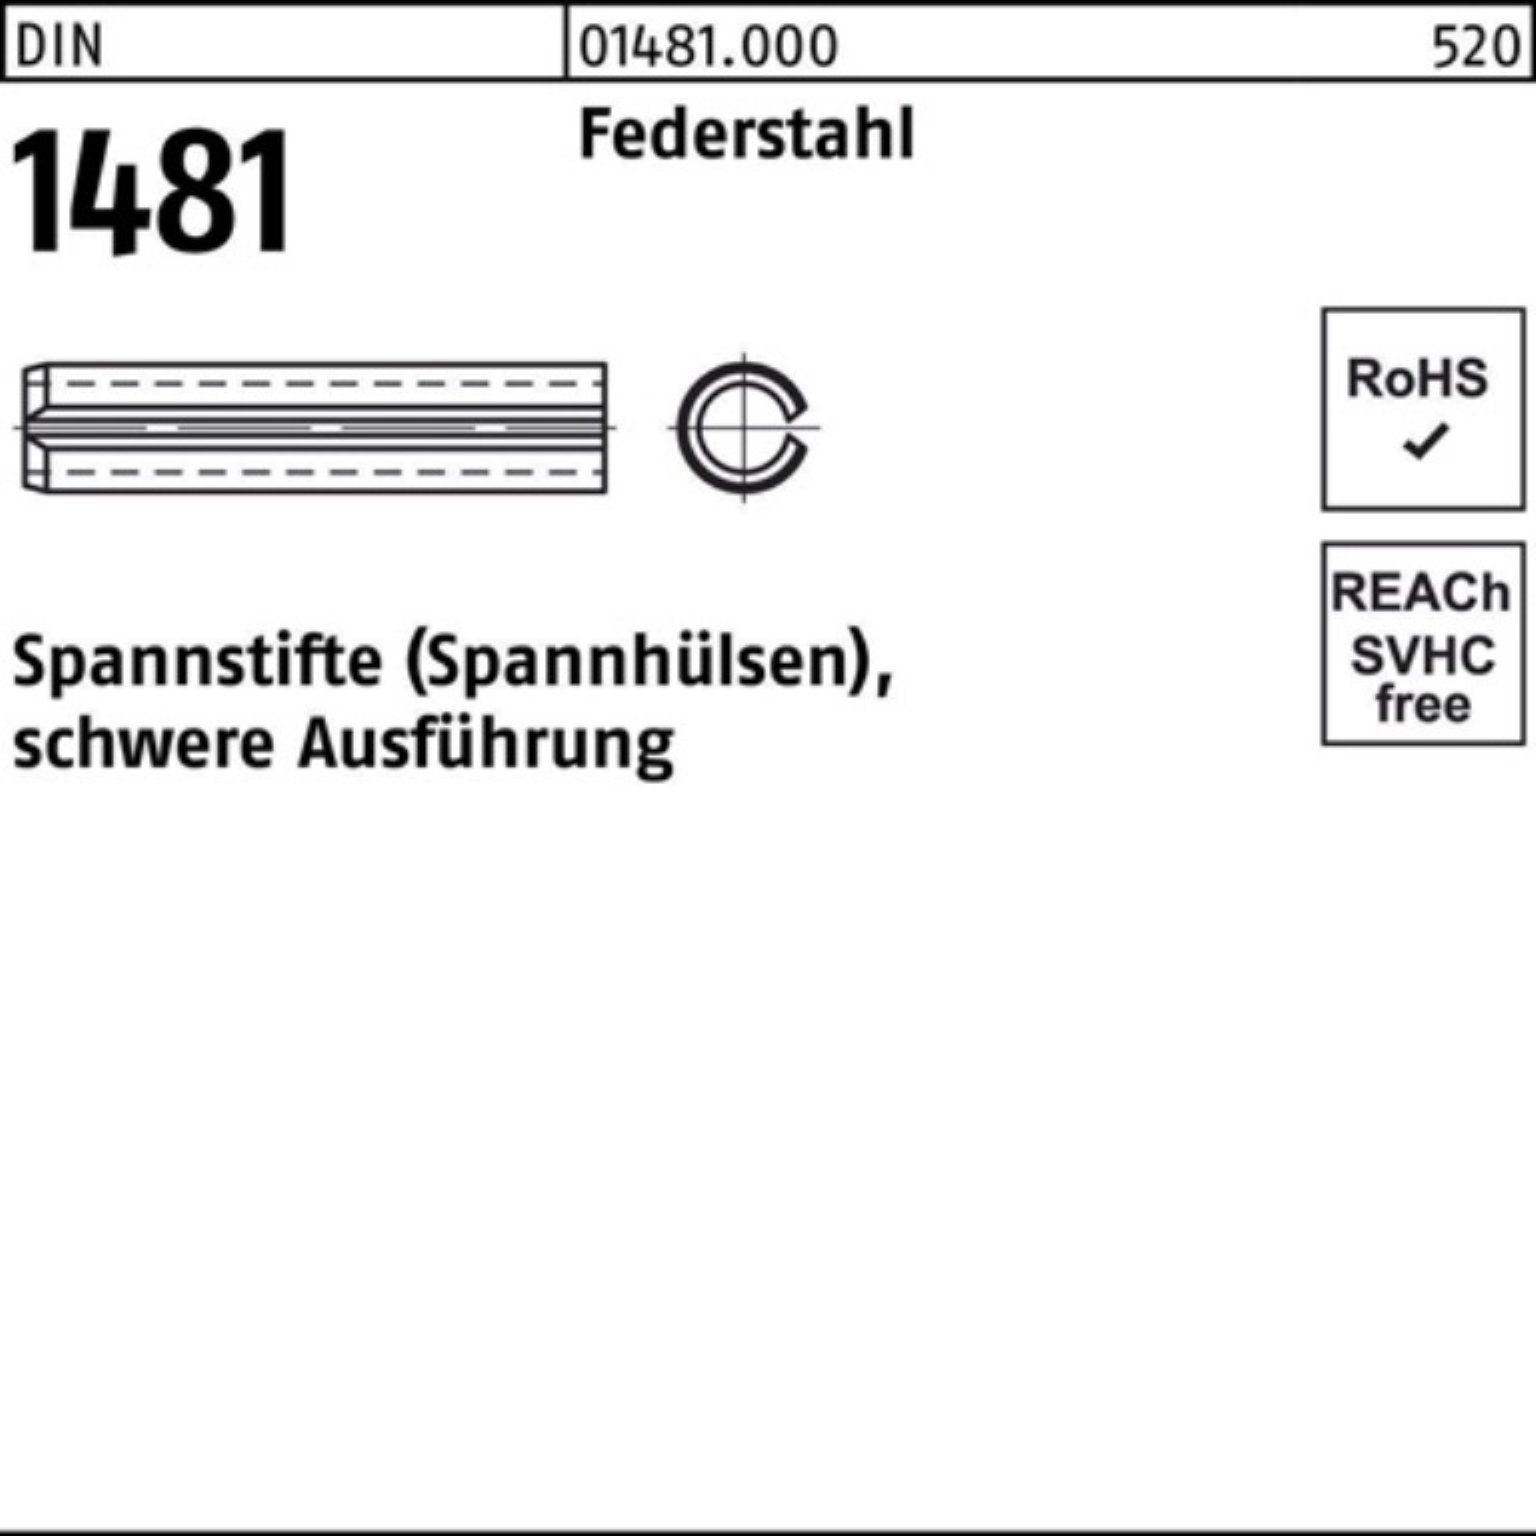 Reyher Spannstift 100er 36 DIN 21x 1481 Federstahl schwere 2 Spannstift Ausführung Pack